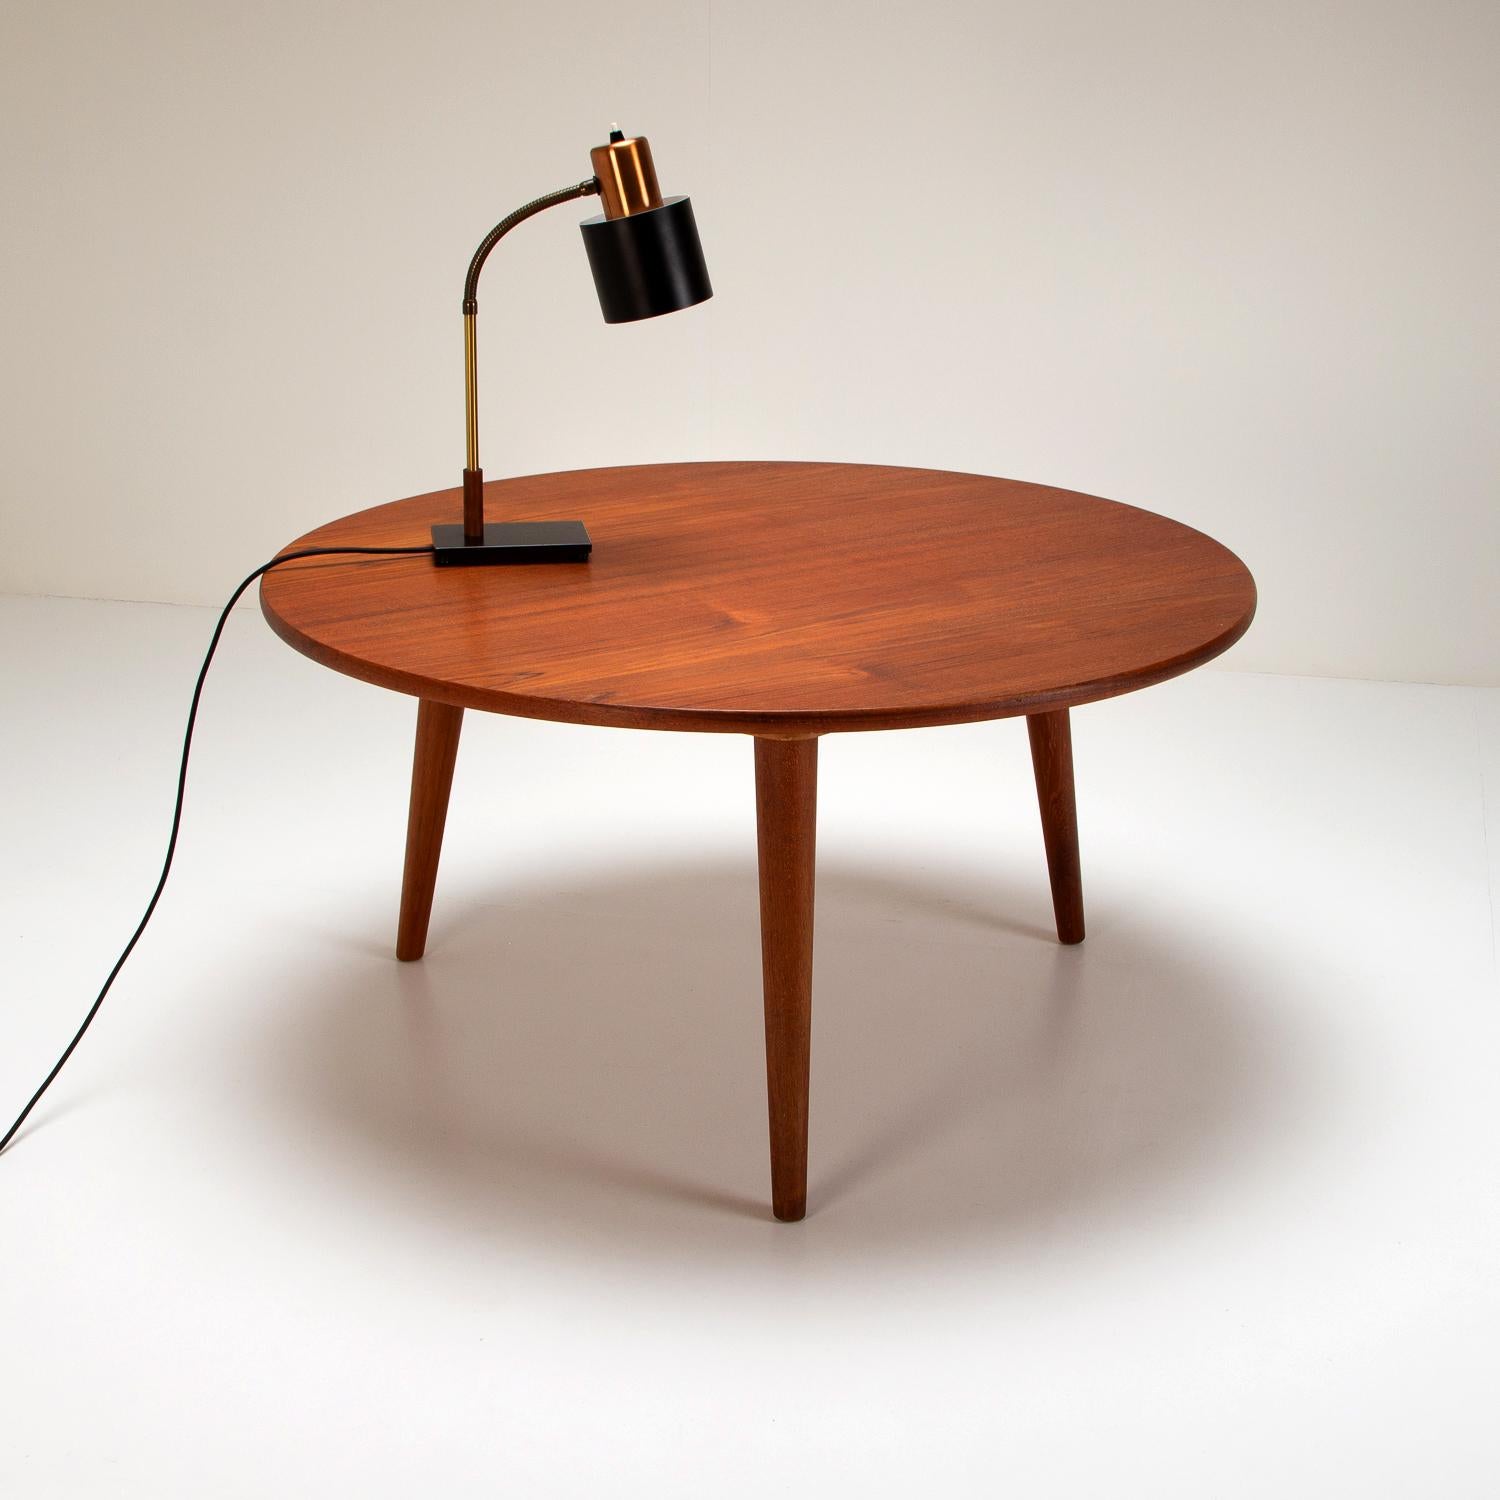 Danish Model AT 8 Teak Coffee Table by Hans Wegner for Andreas Tuck, Denmark, 1950s For Sale